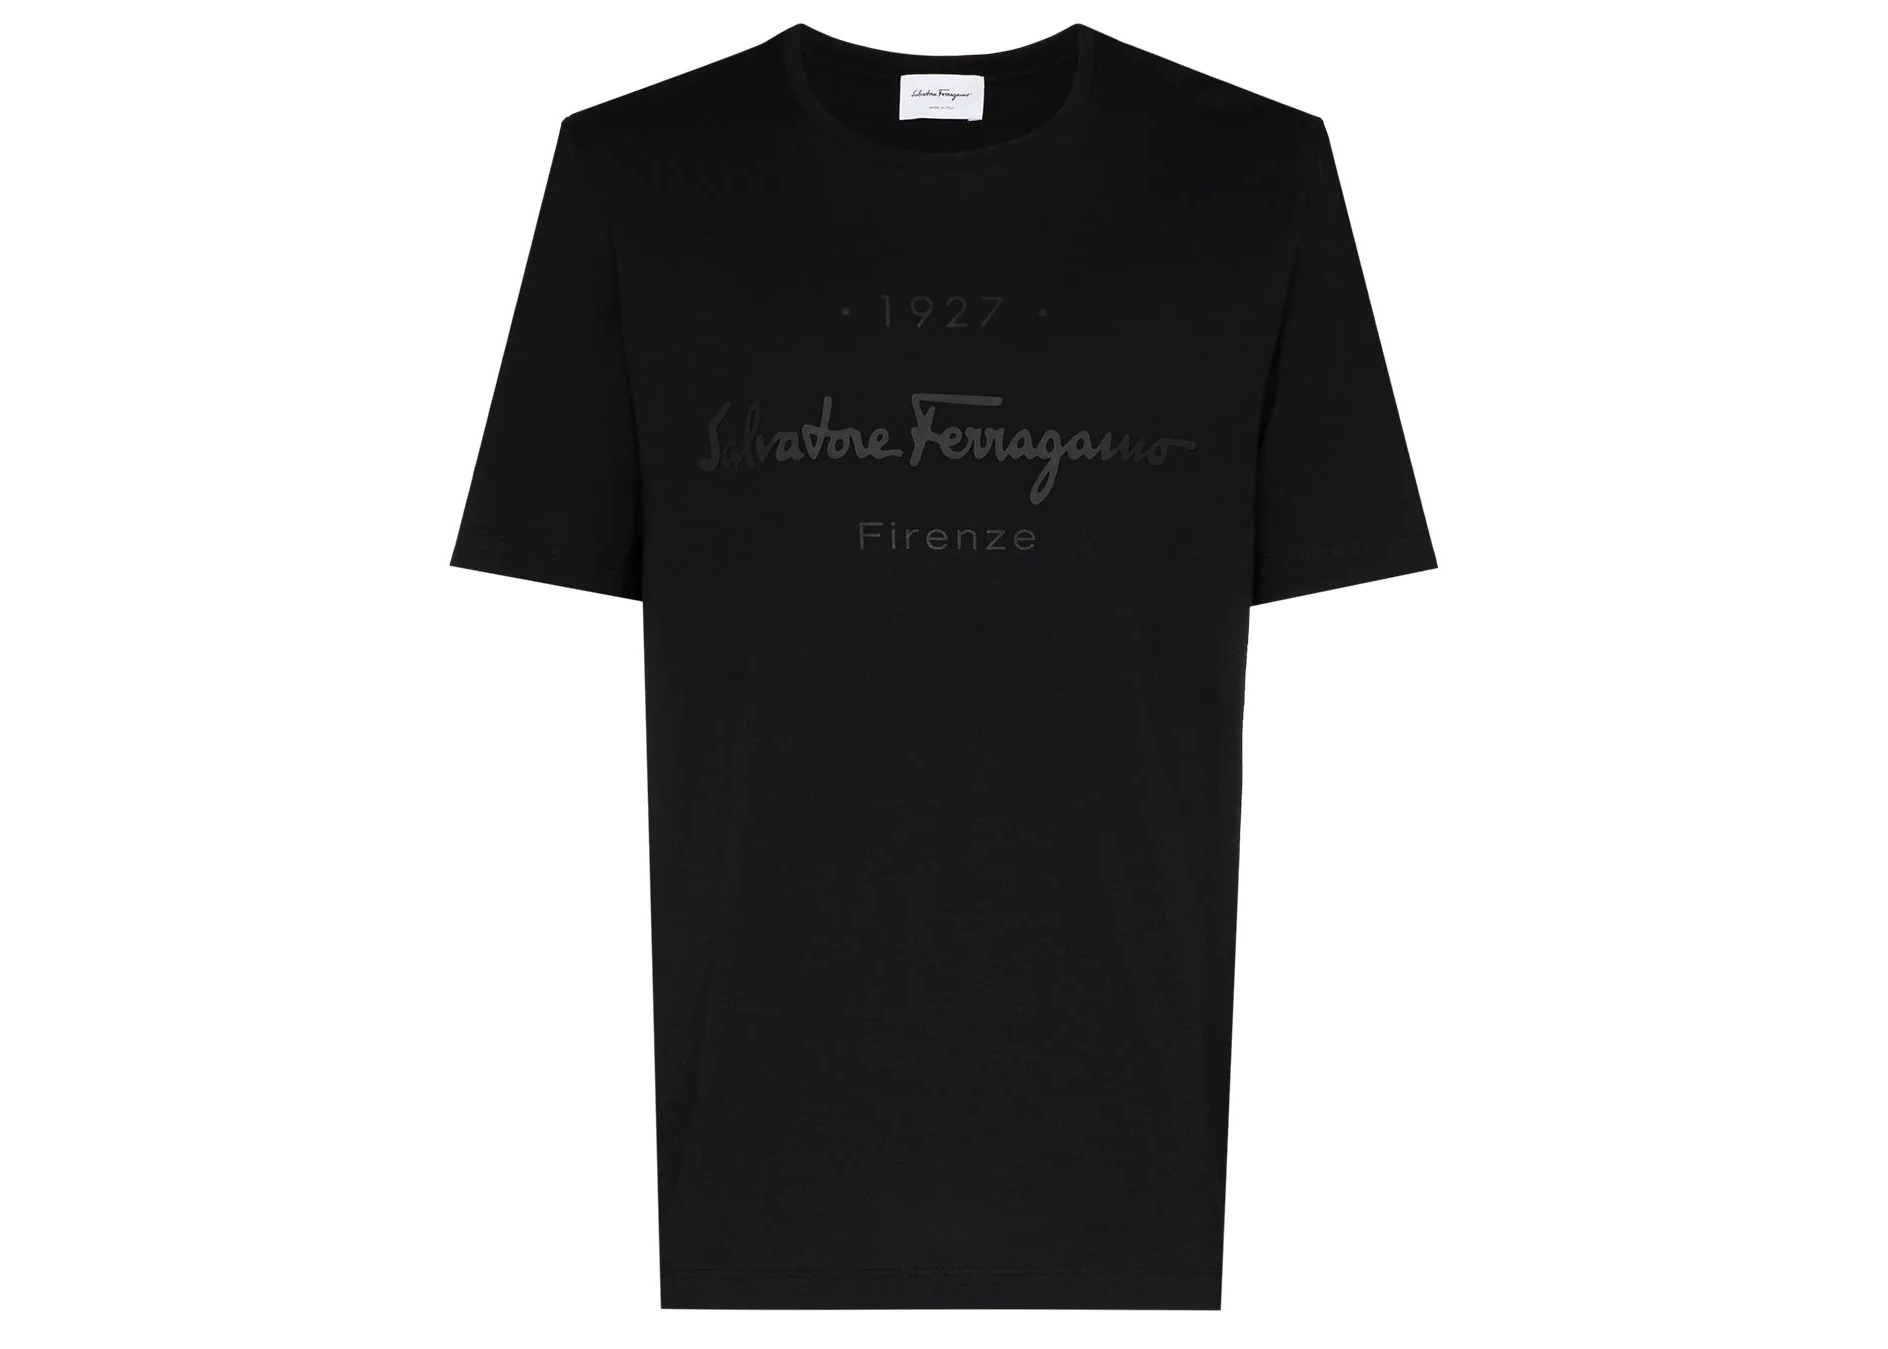 Ferragamo 1927 Signature T-shirt Black Men's - SS22 - US